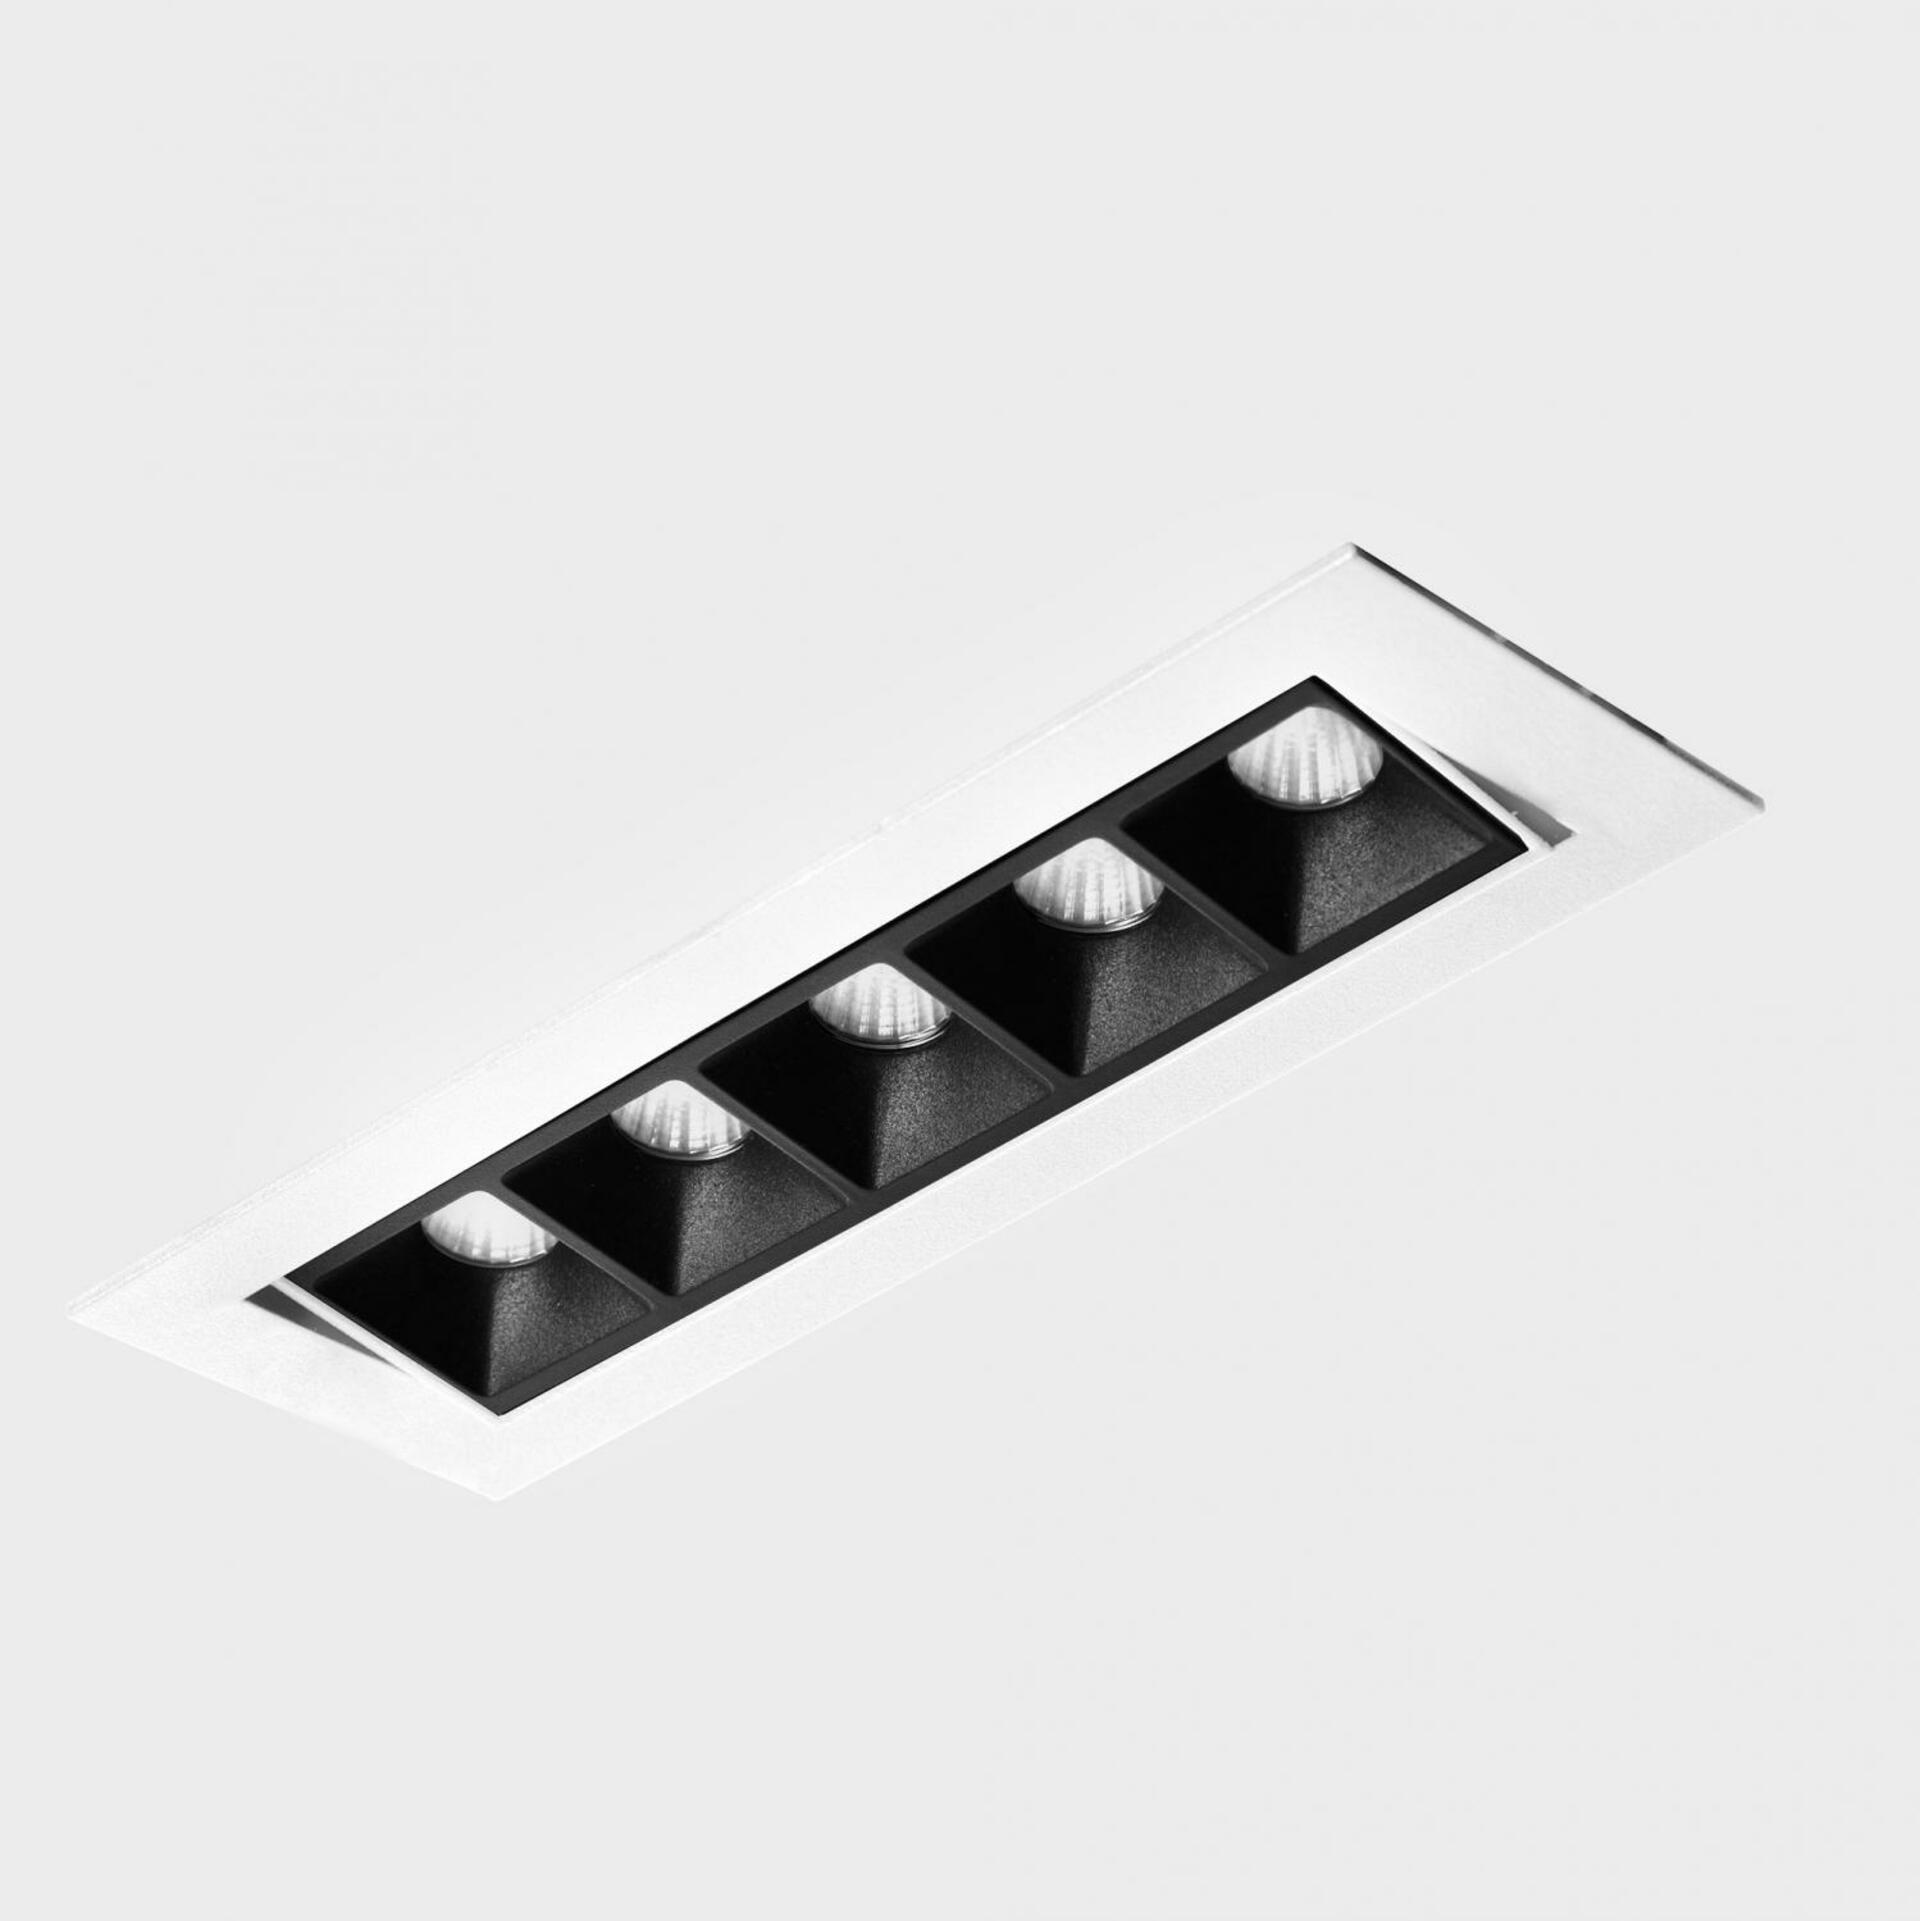 KOHL LIGHTING KOHL-Lighting NSES TILT zapuštěné svítidlo s rámečkem 167x58 mm bílá-černá 10 W CRI 90 4000K DALI